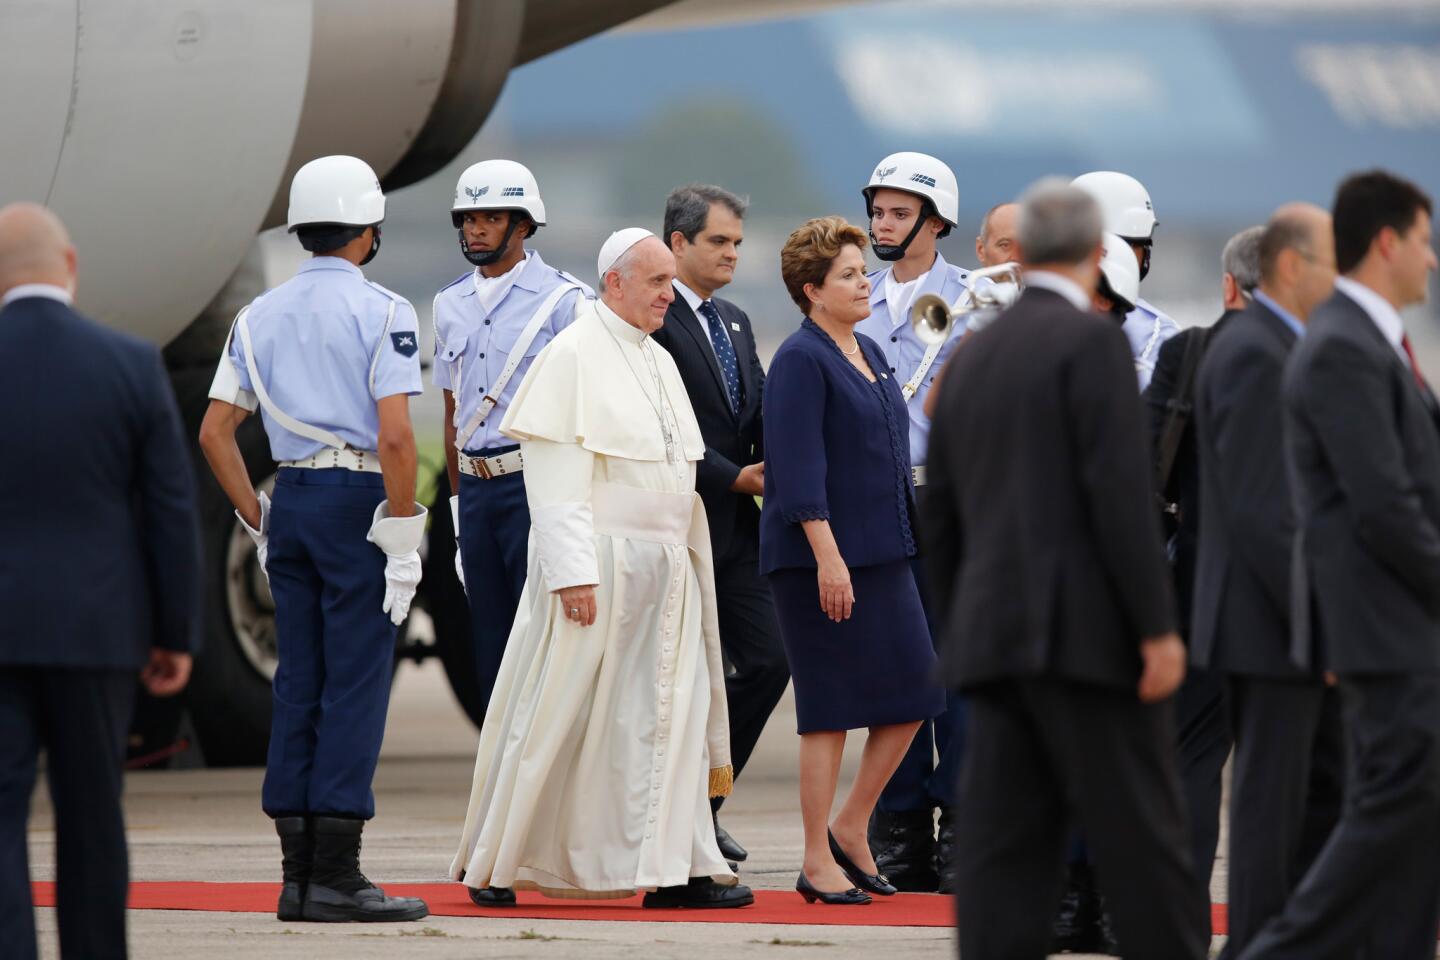 Pope Francis in Brazil